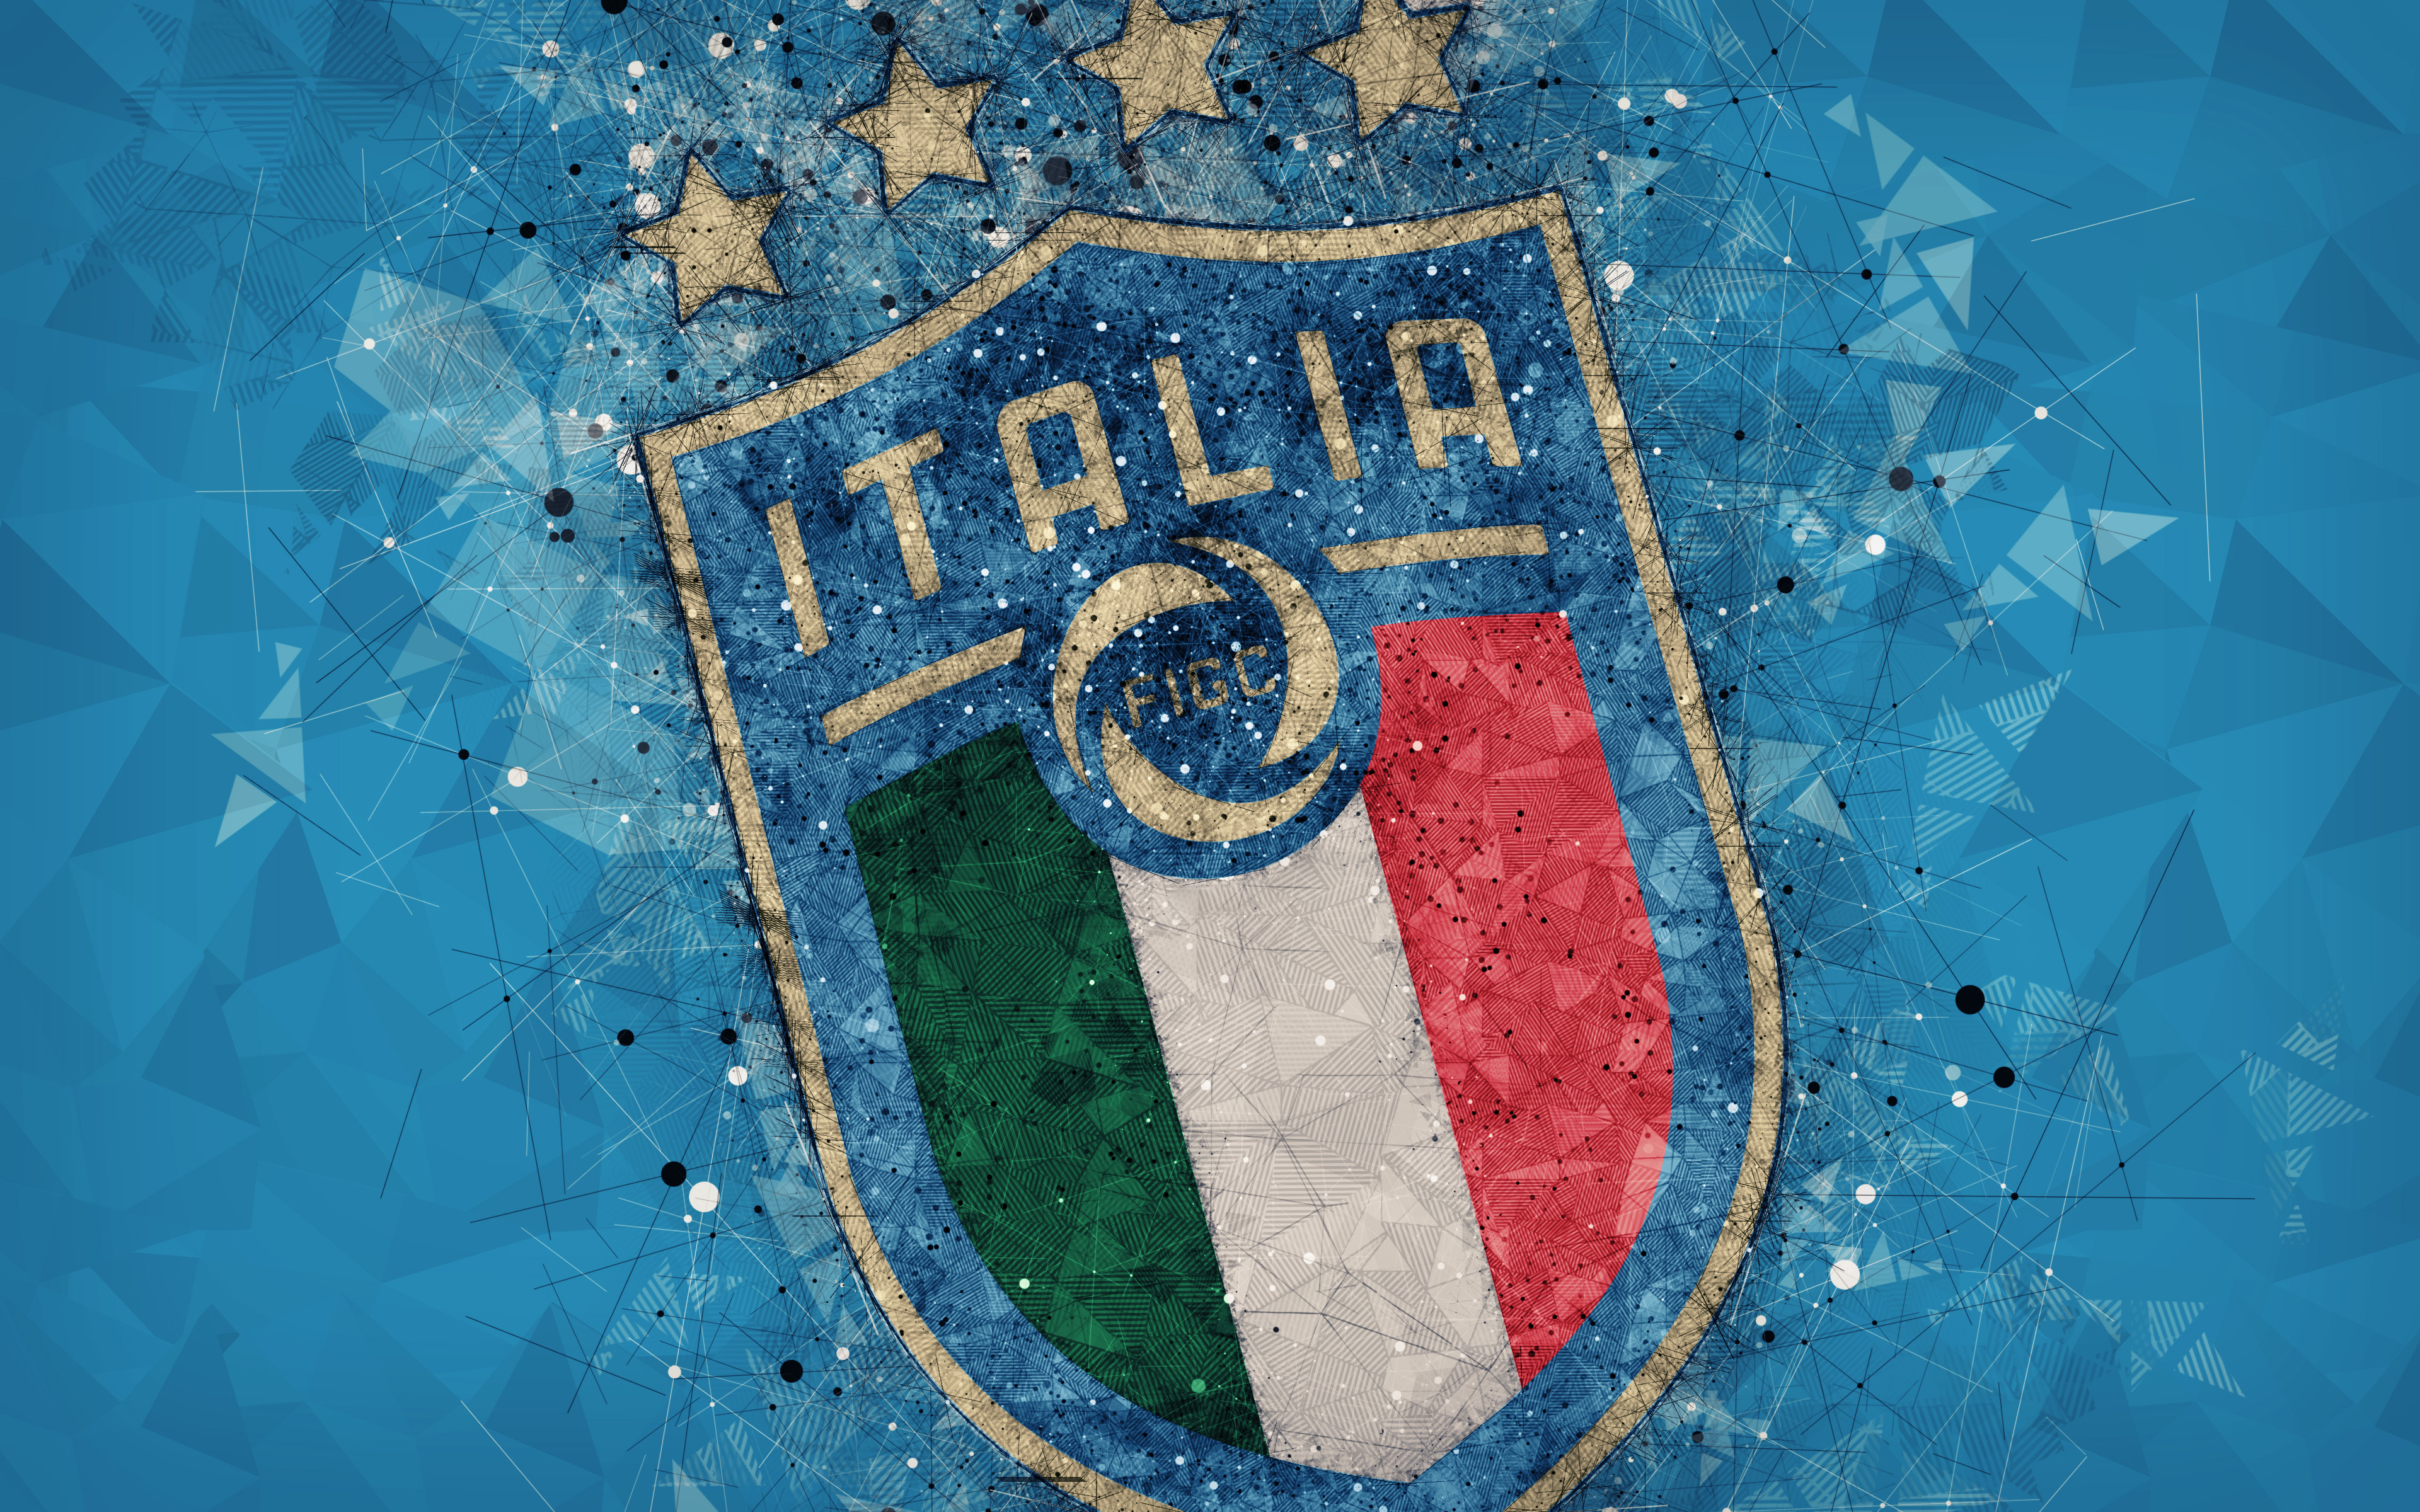 Los mejores fondos de pantalla de Selección De Fútbol De Italia para la pantalla del teléfono